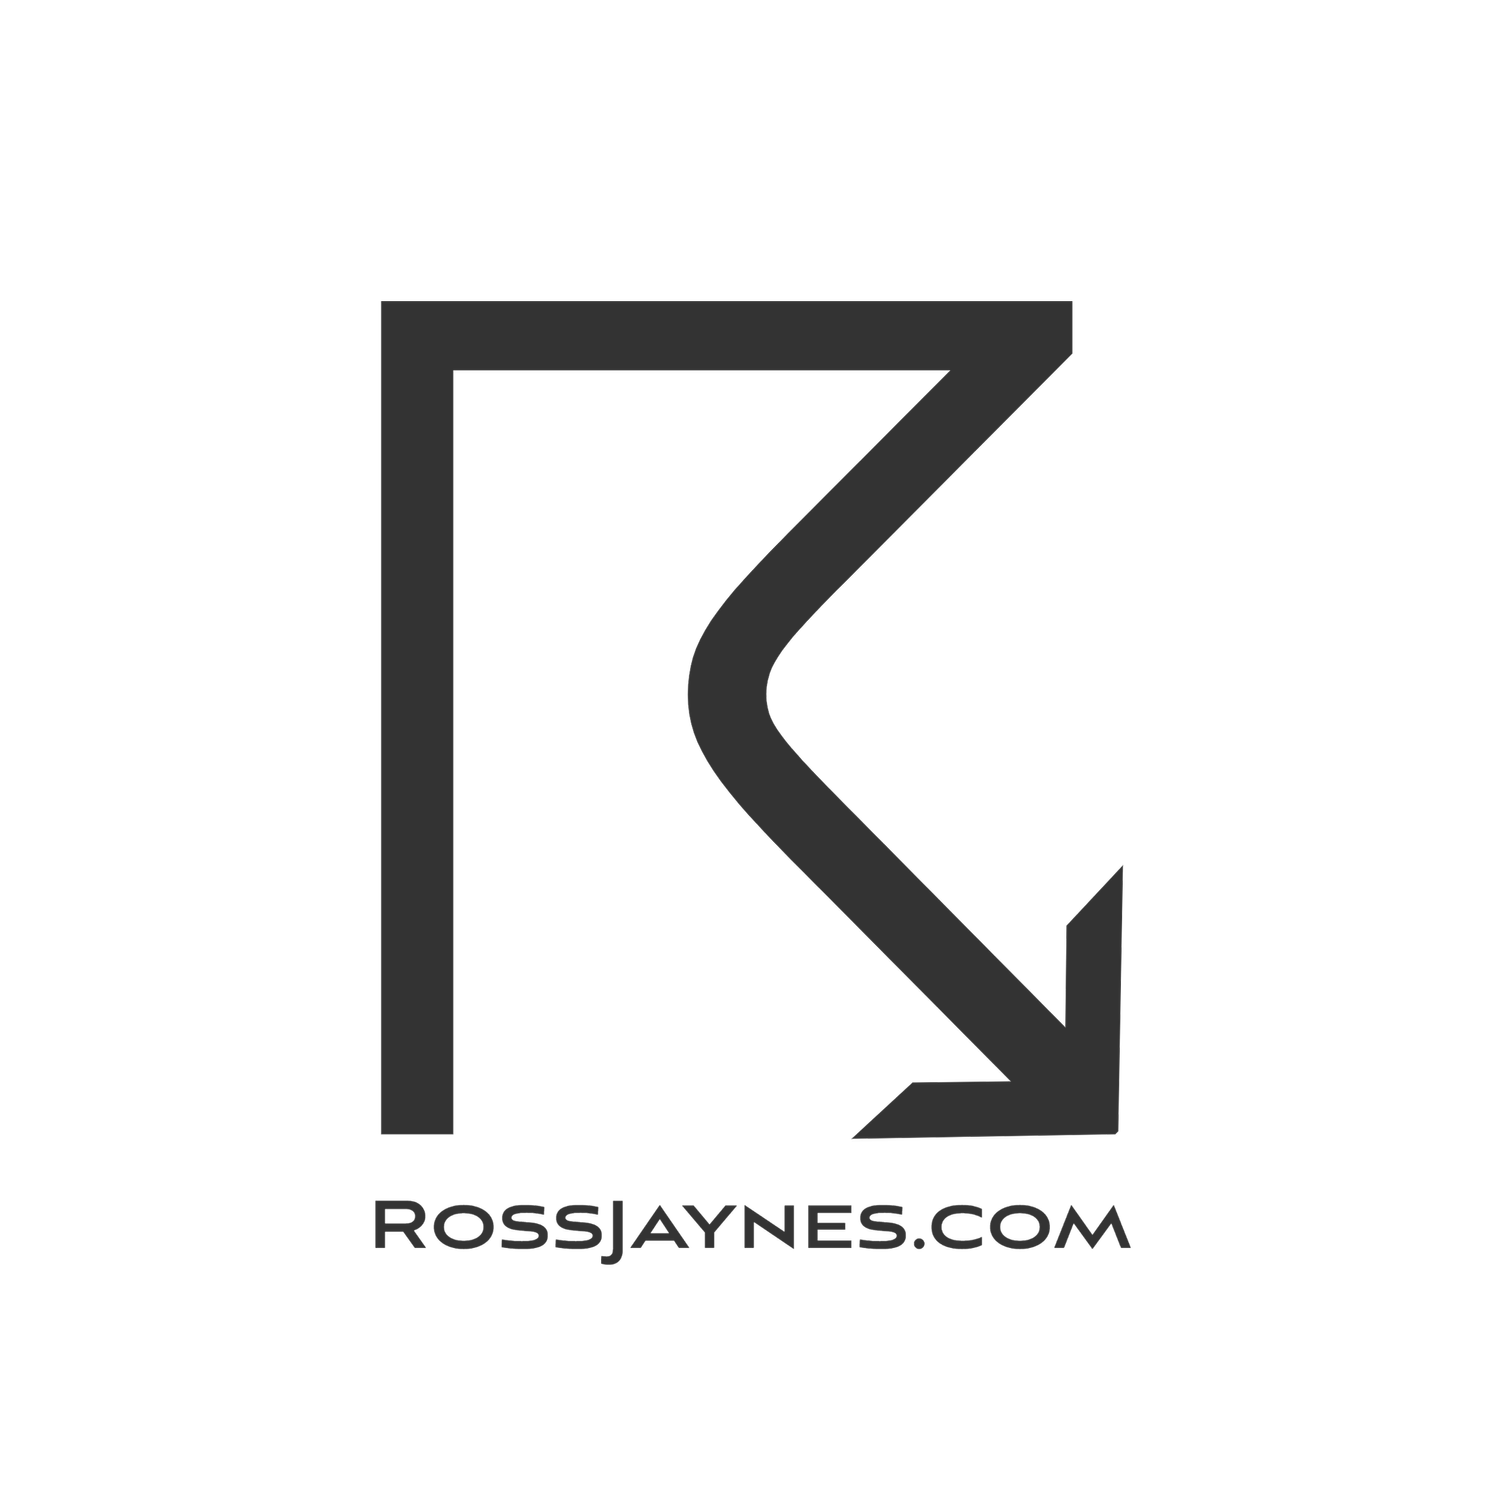 RossJaynes.com